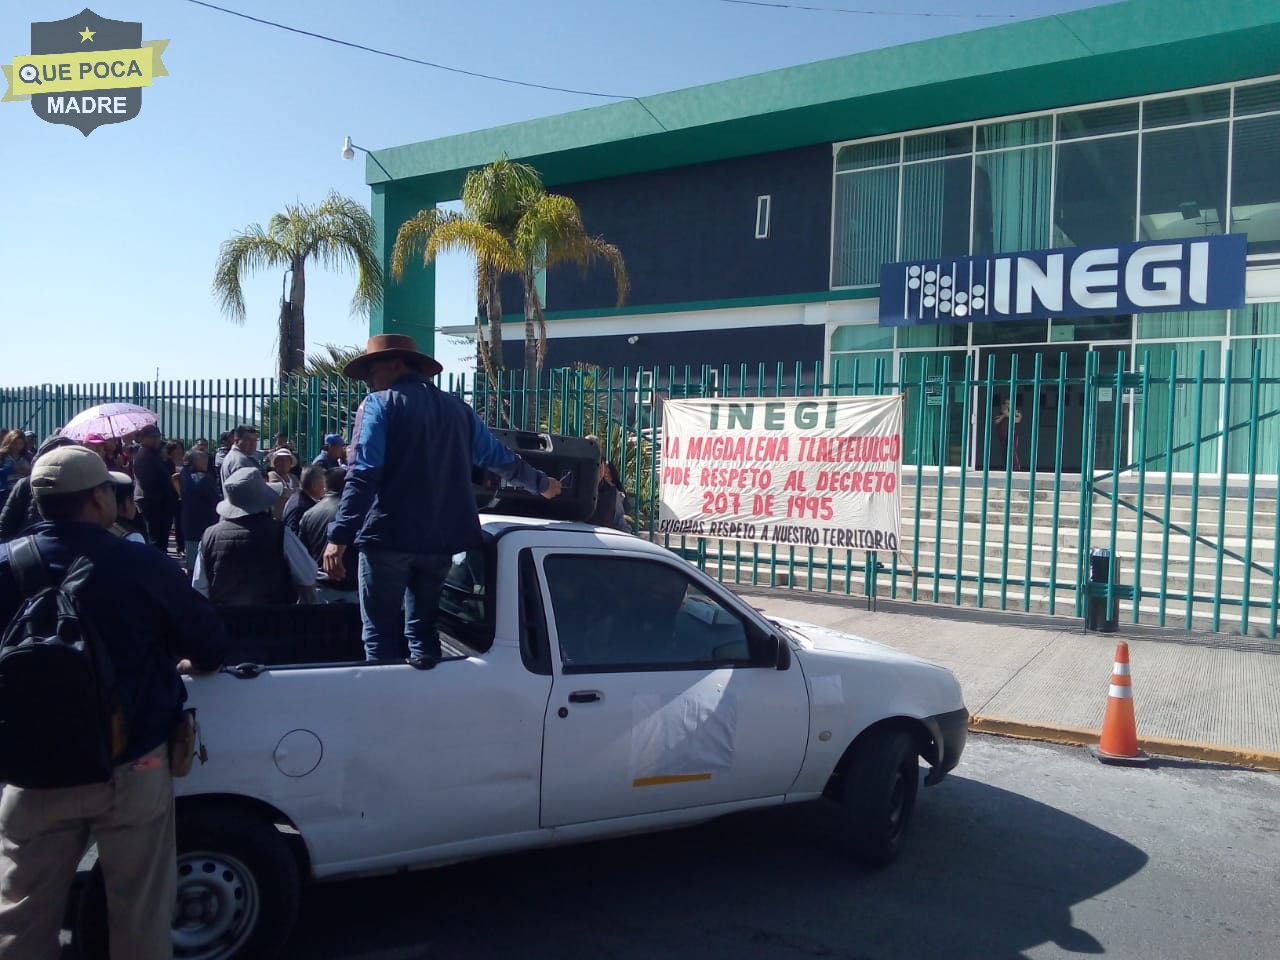 Protestan habitantes de Tlaltelulco por respeto de territorio.